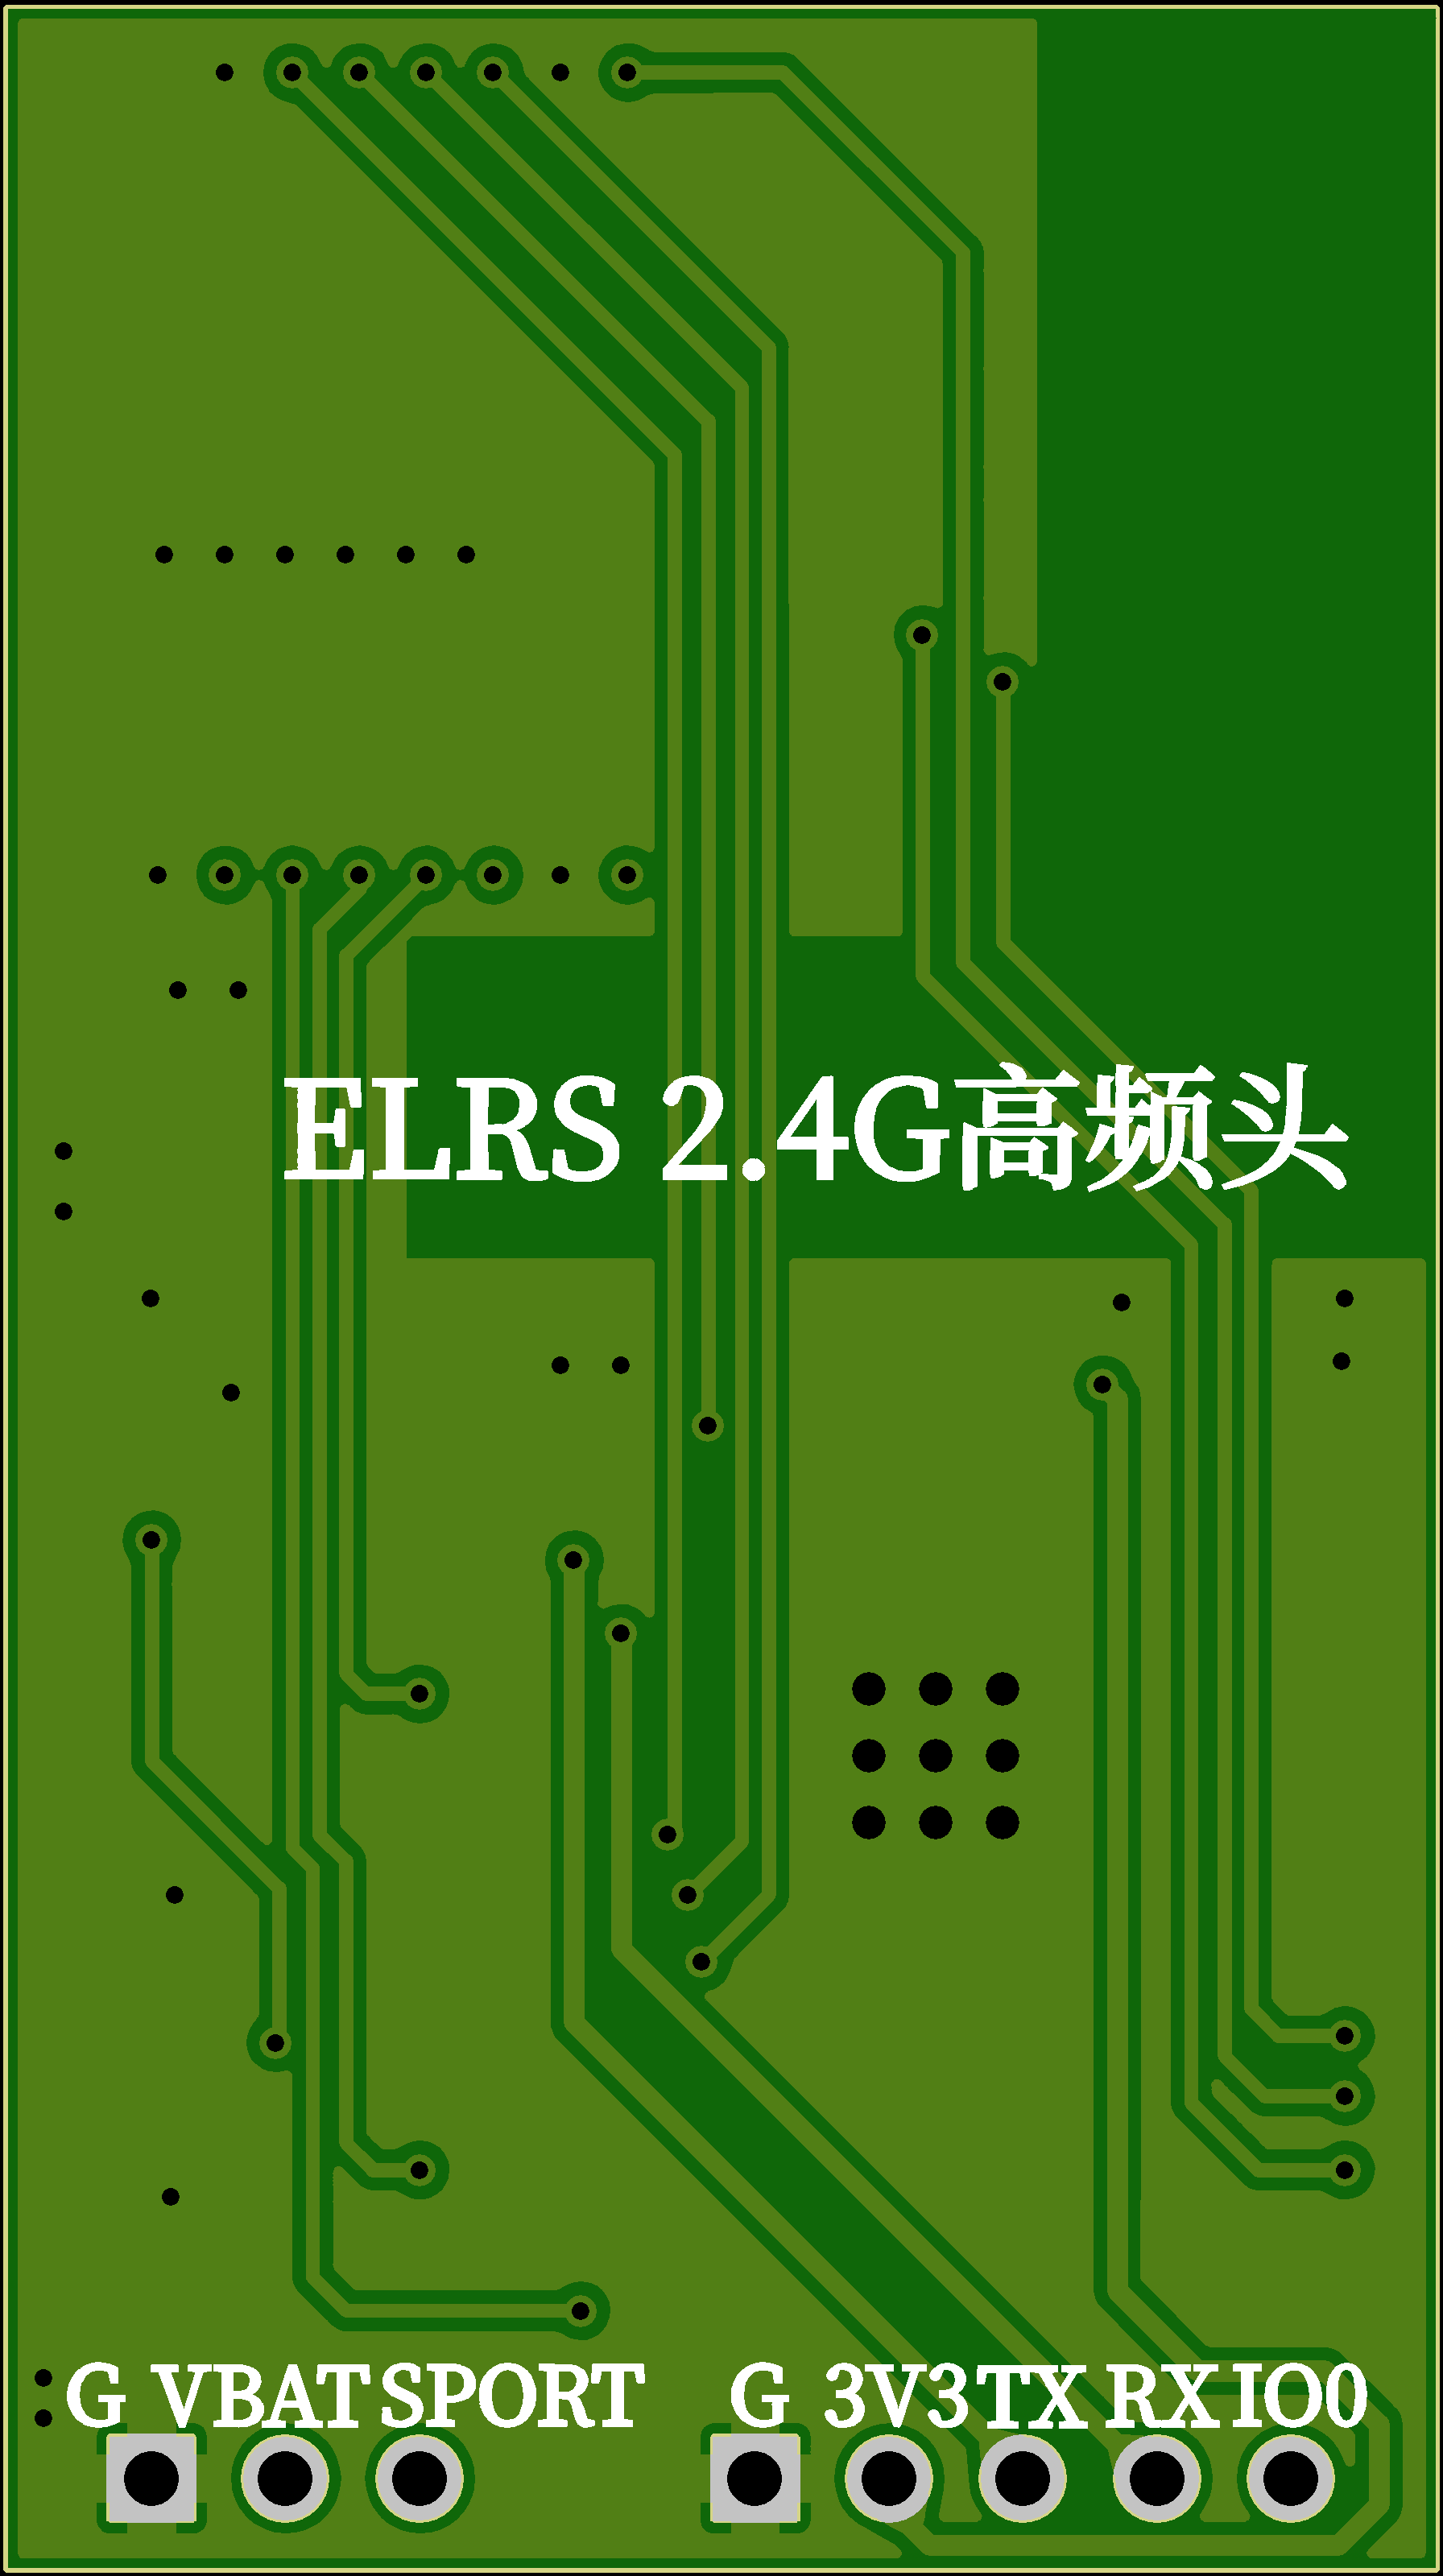 ELRS 2.4G高频头PCB设计原理图2